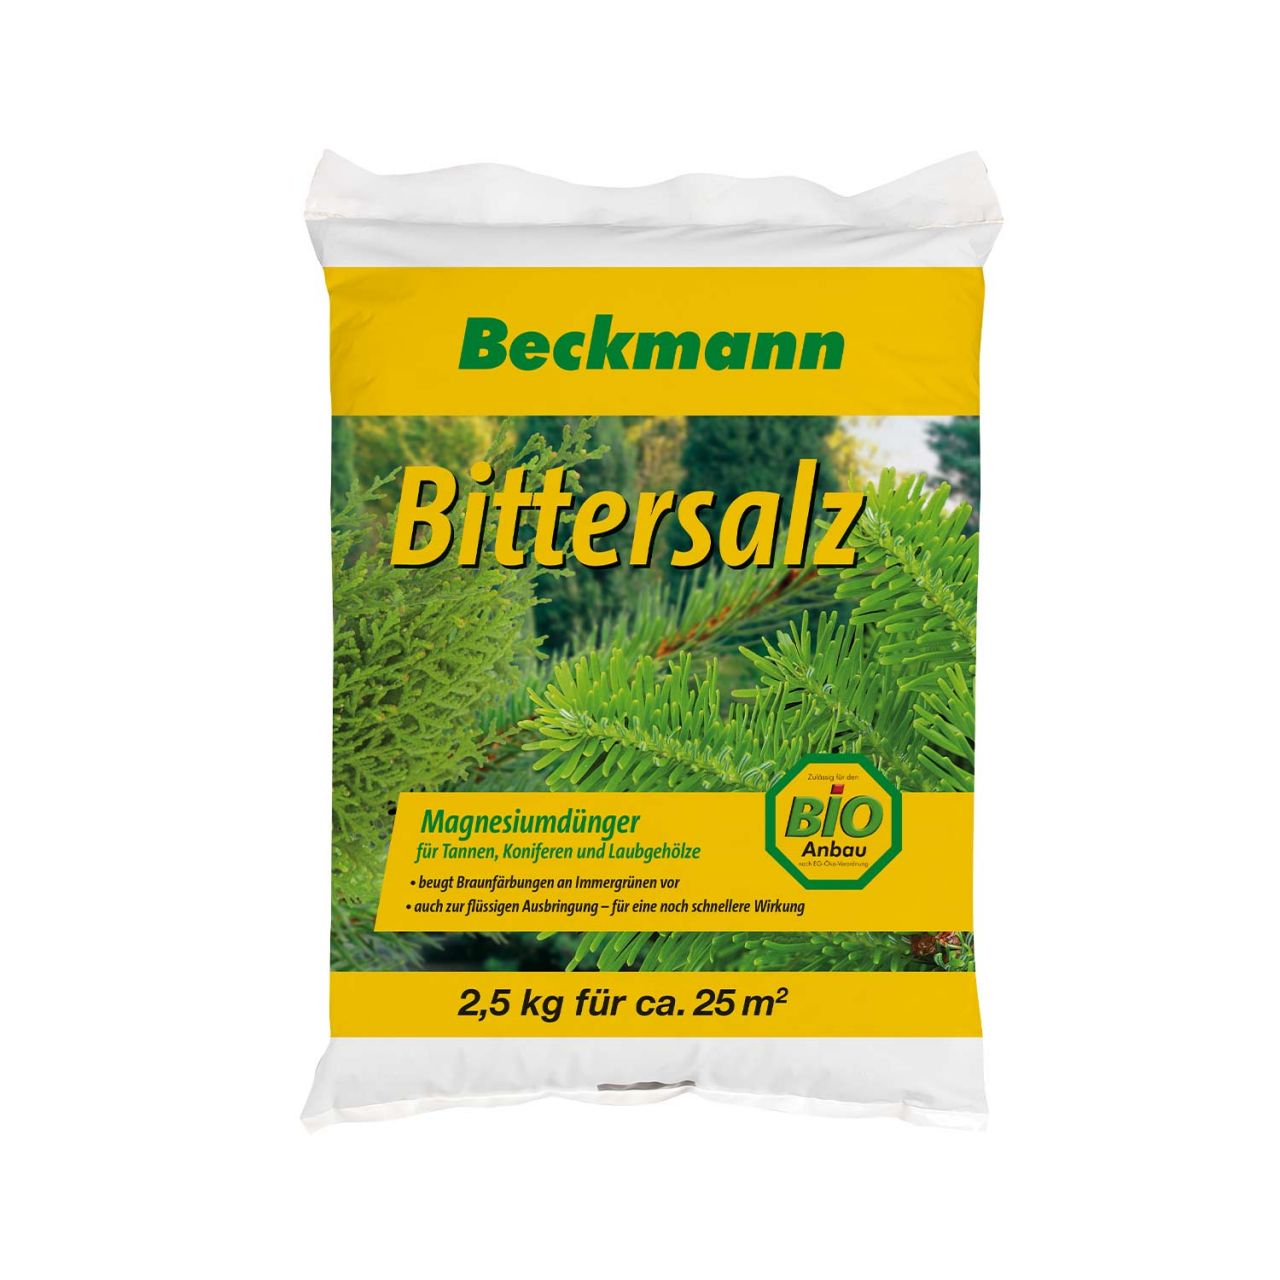 Kategorie <b>Produkt nicht gewünscht </b> - Bittersalz - 2,5 kg - Beckmann - 